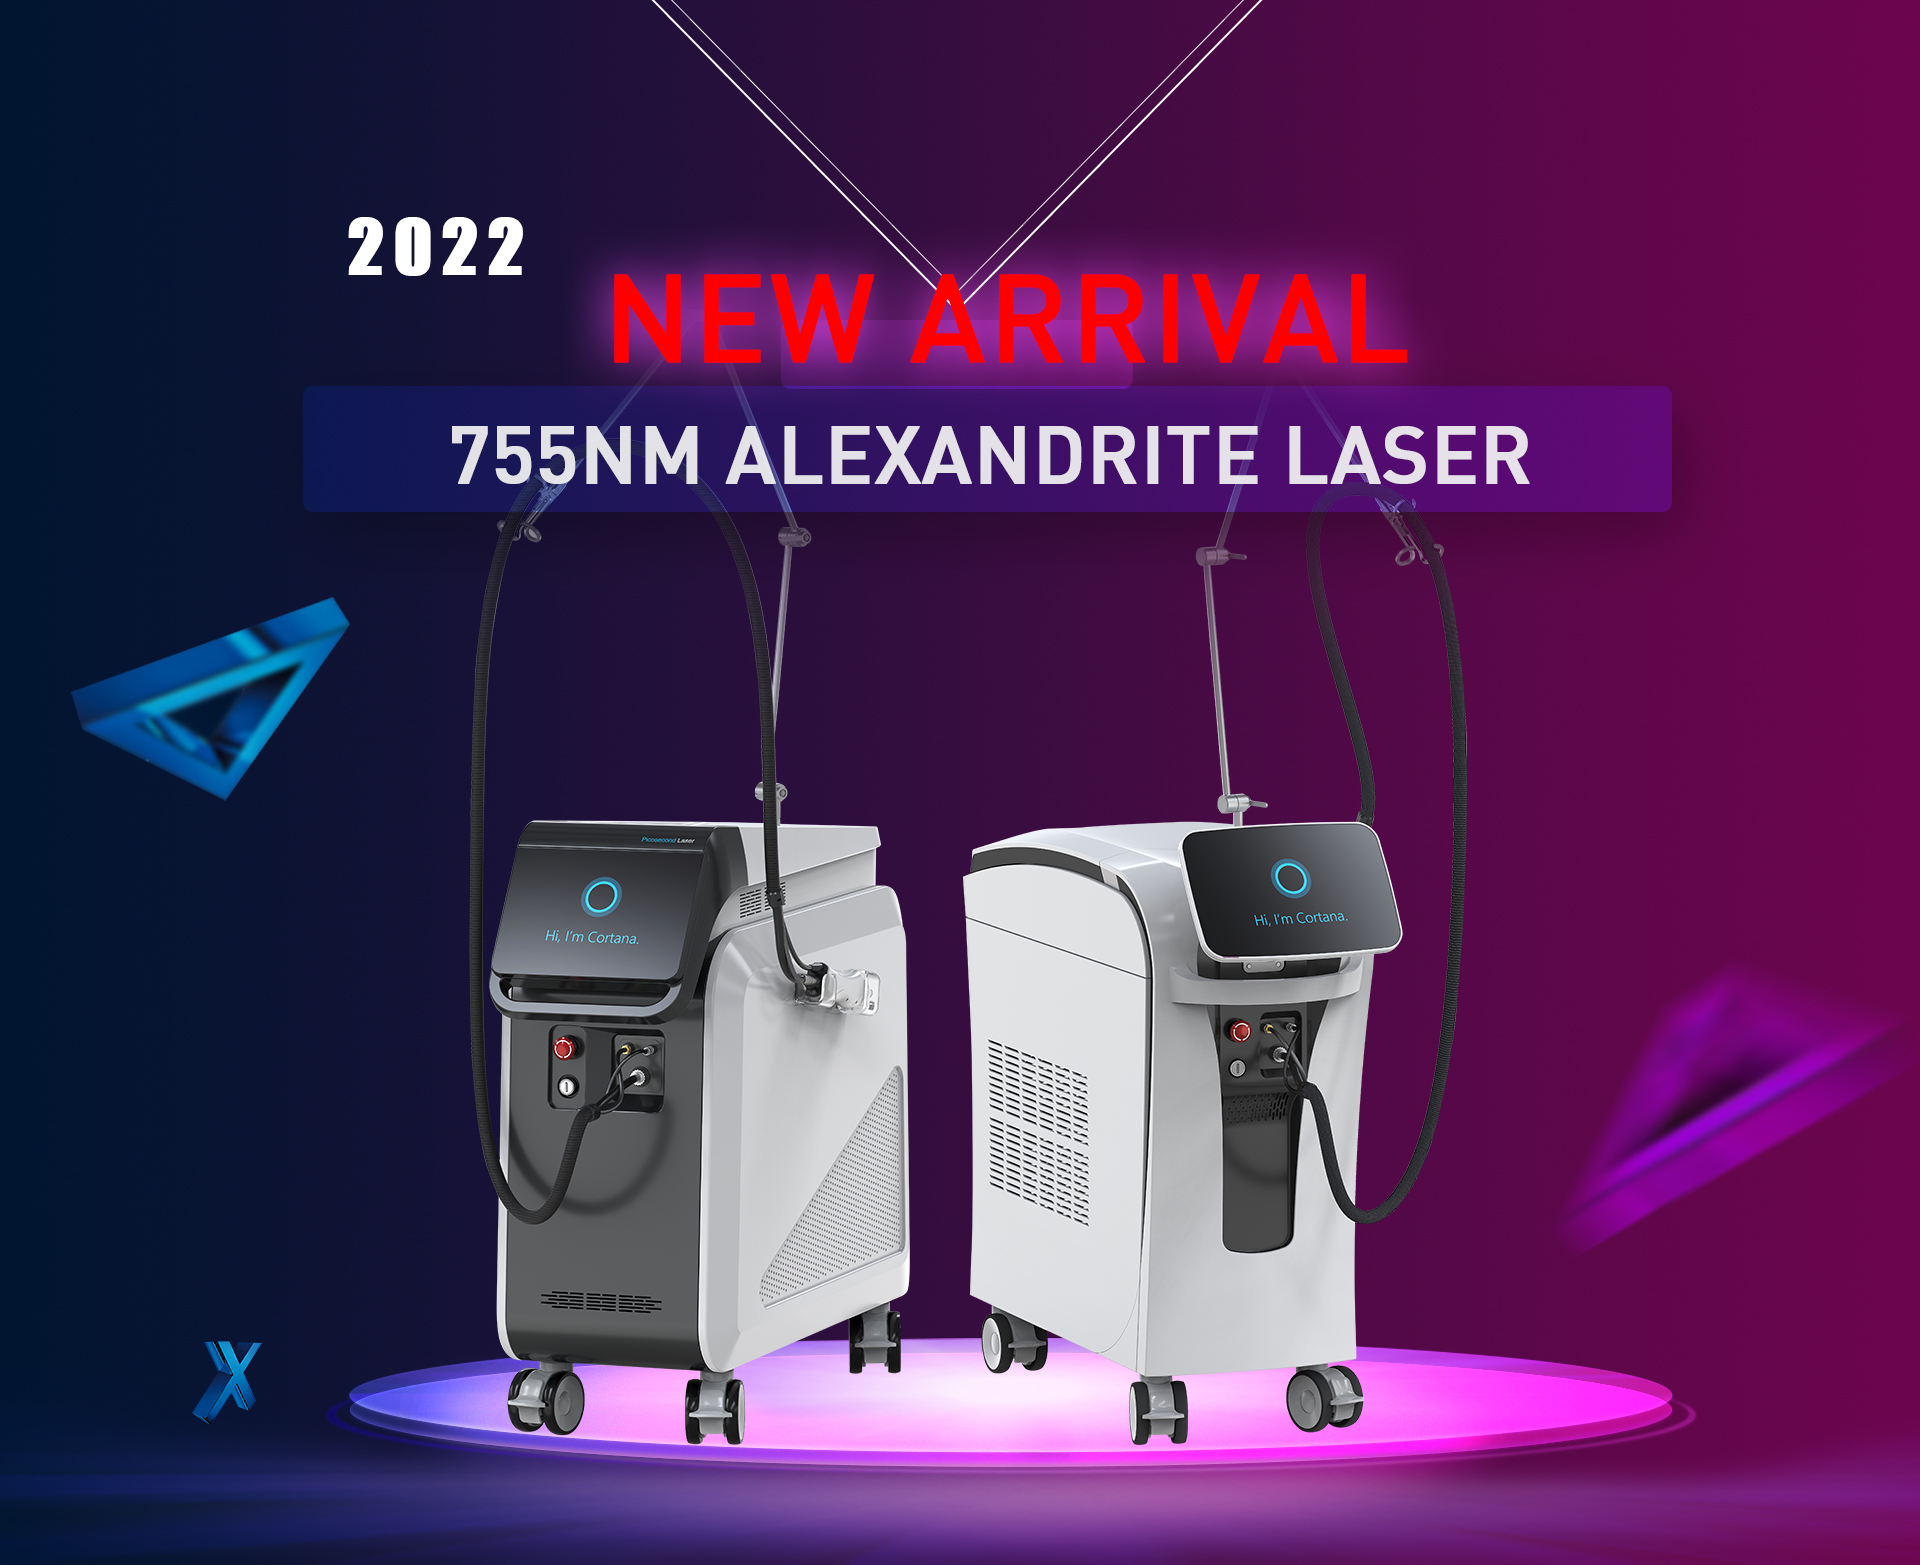 Dos tipus de nova màquina làser d'Alexandrita de 755 nm llançada al mercat